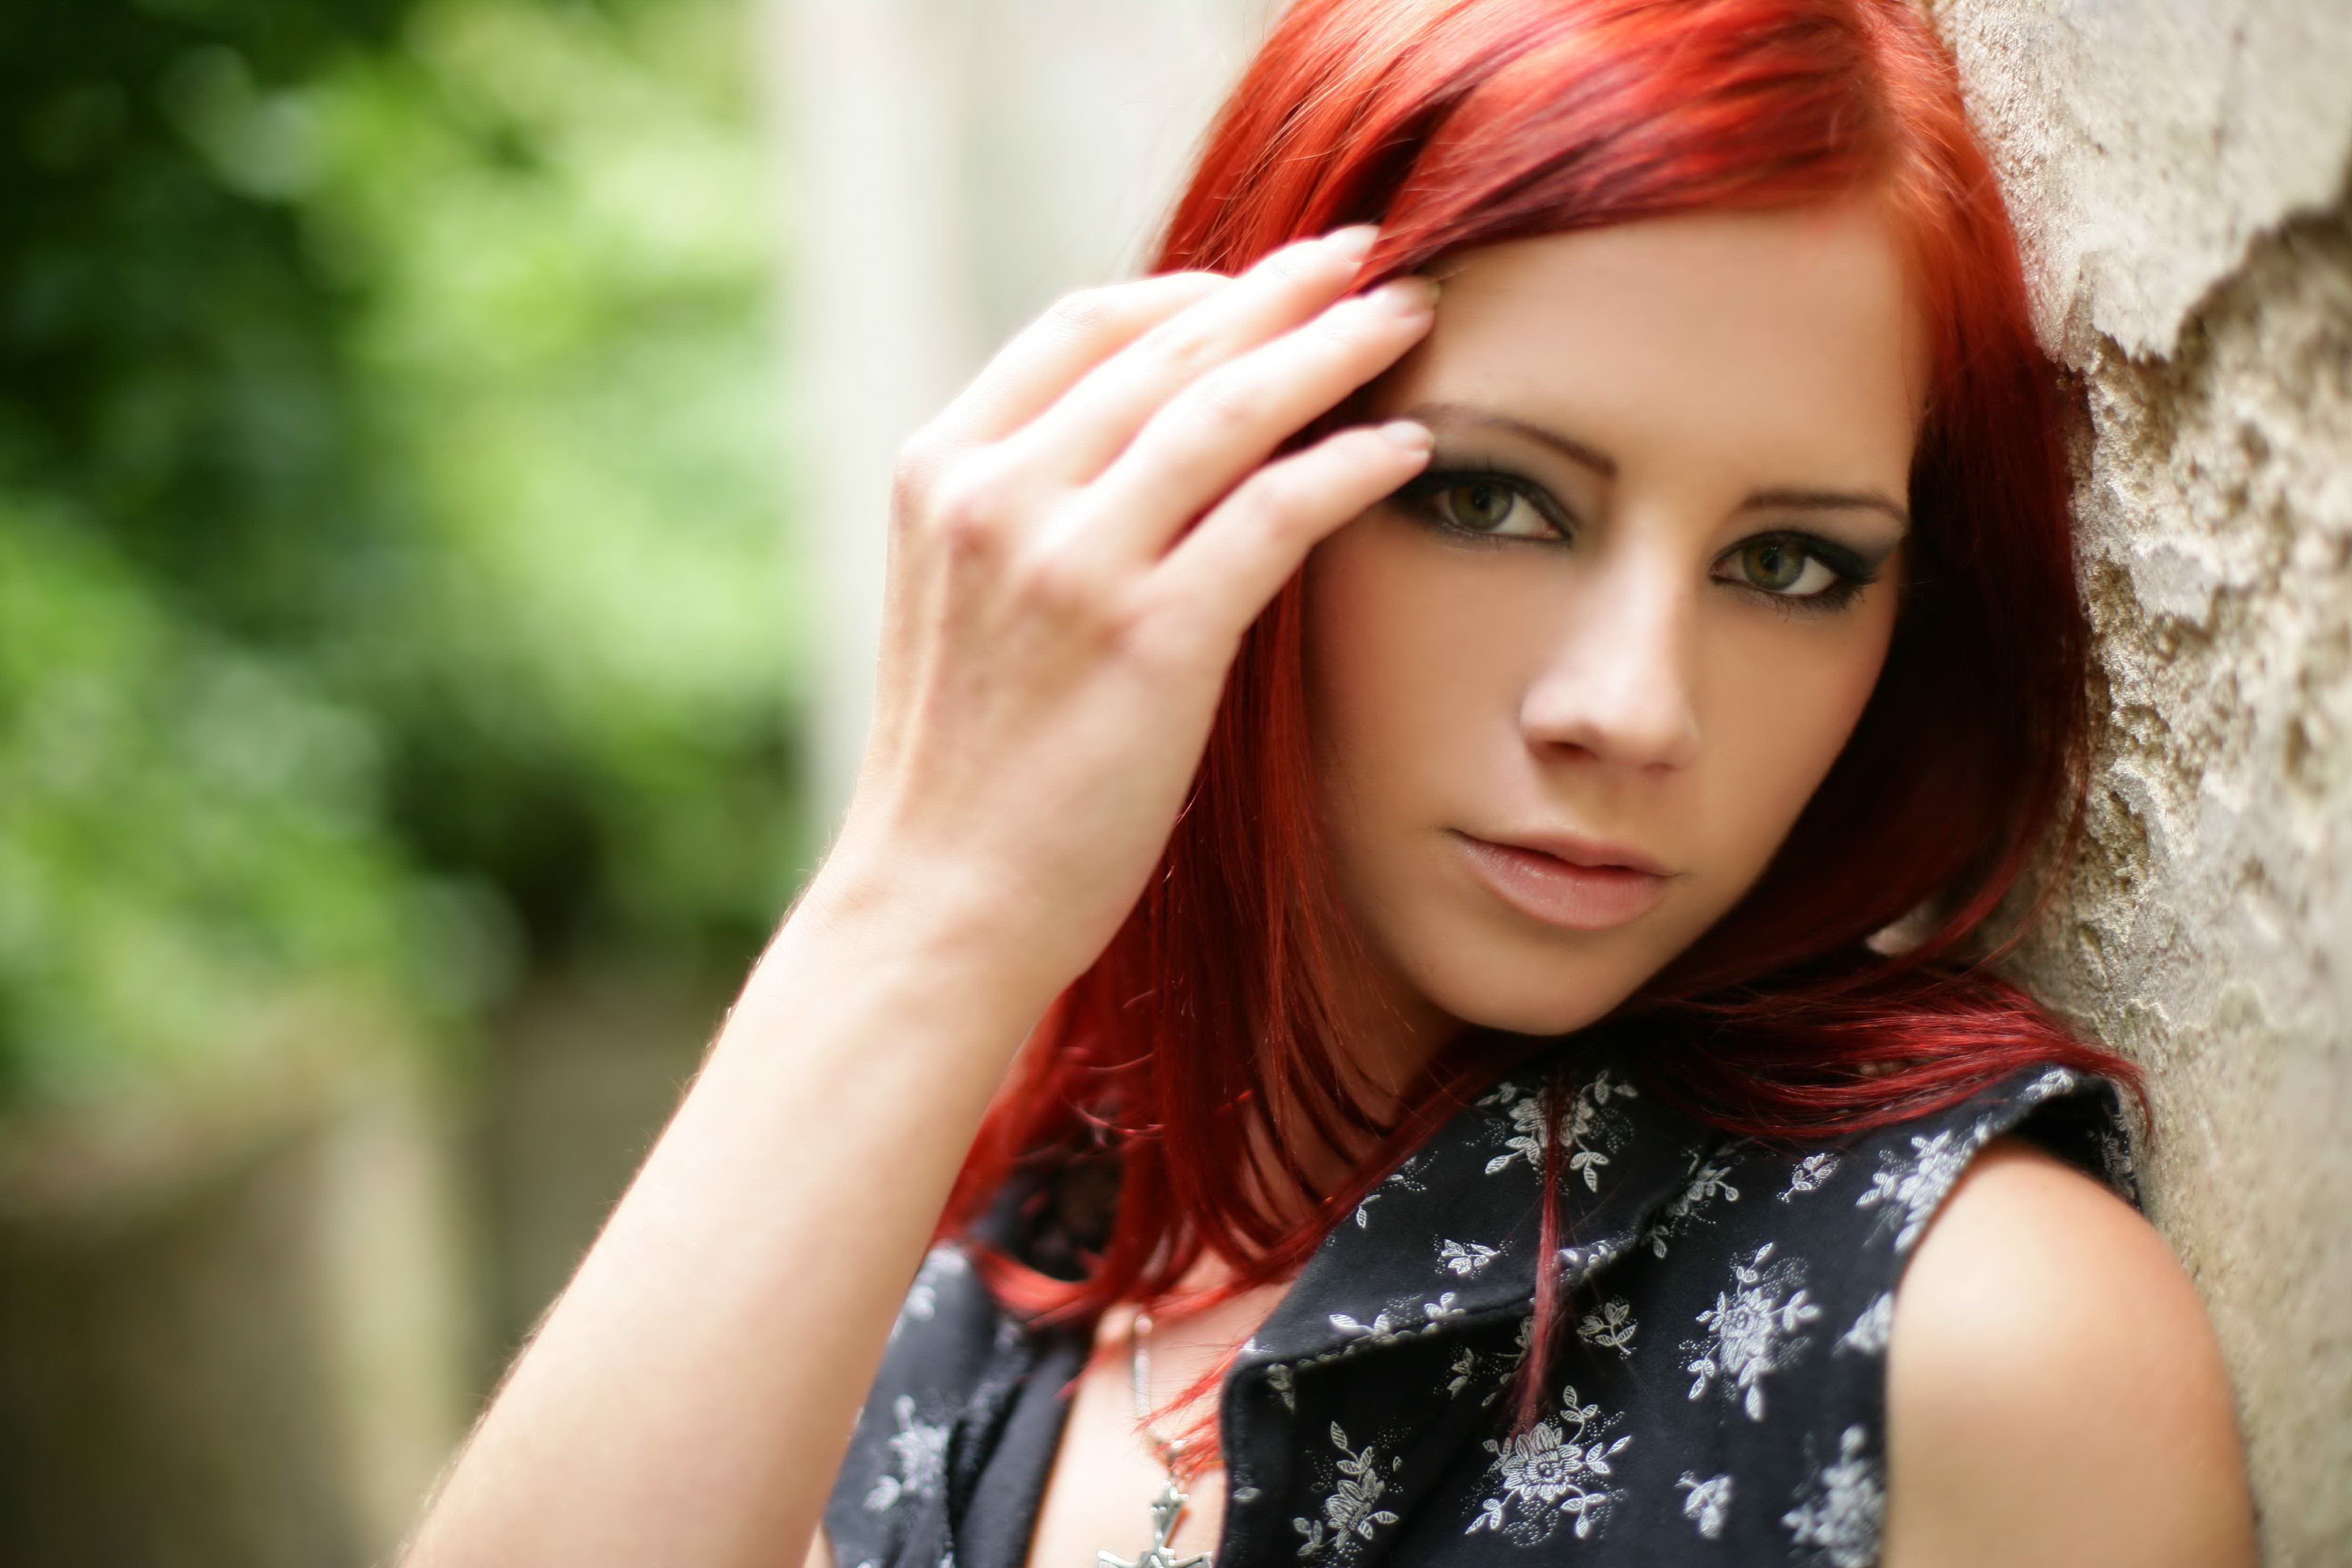 Pornstar Looking At Viewer Women Ariel Piper Fawn Czech Women Redhead Hands In Hair 